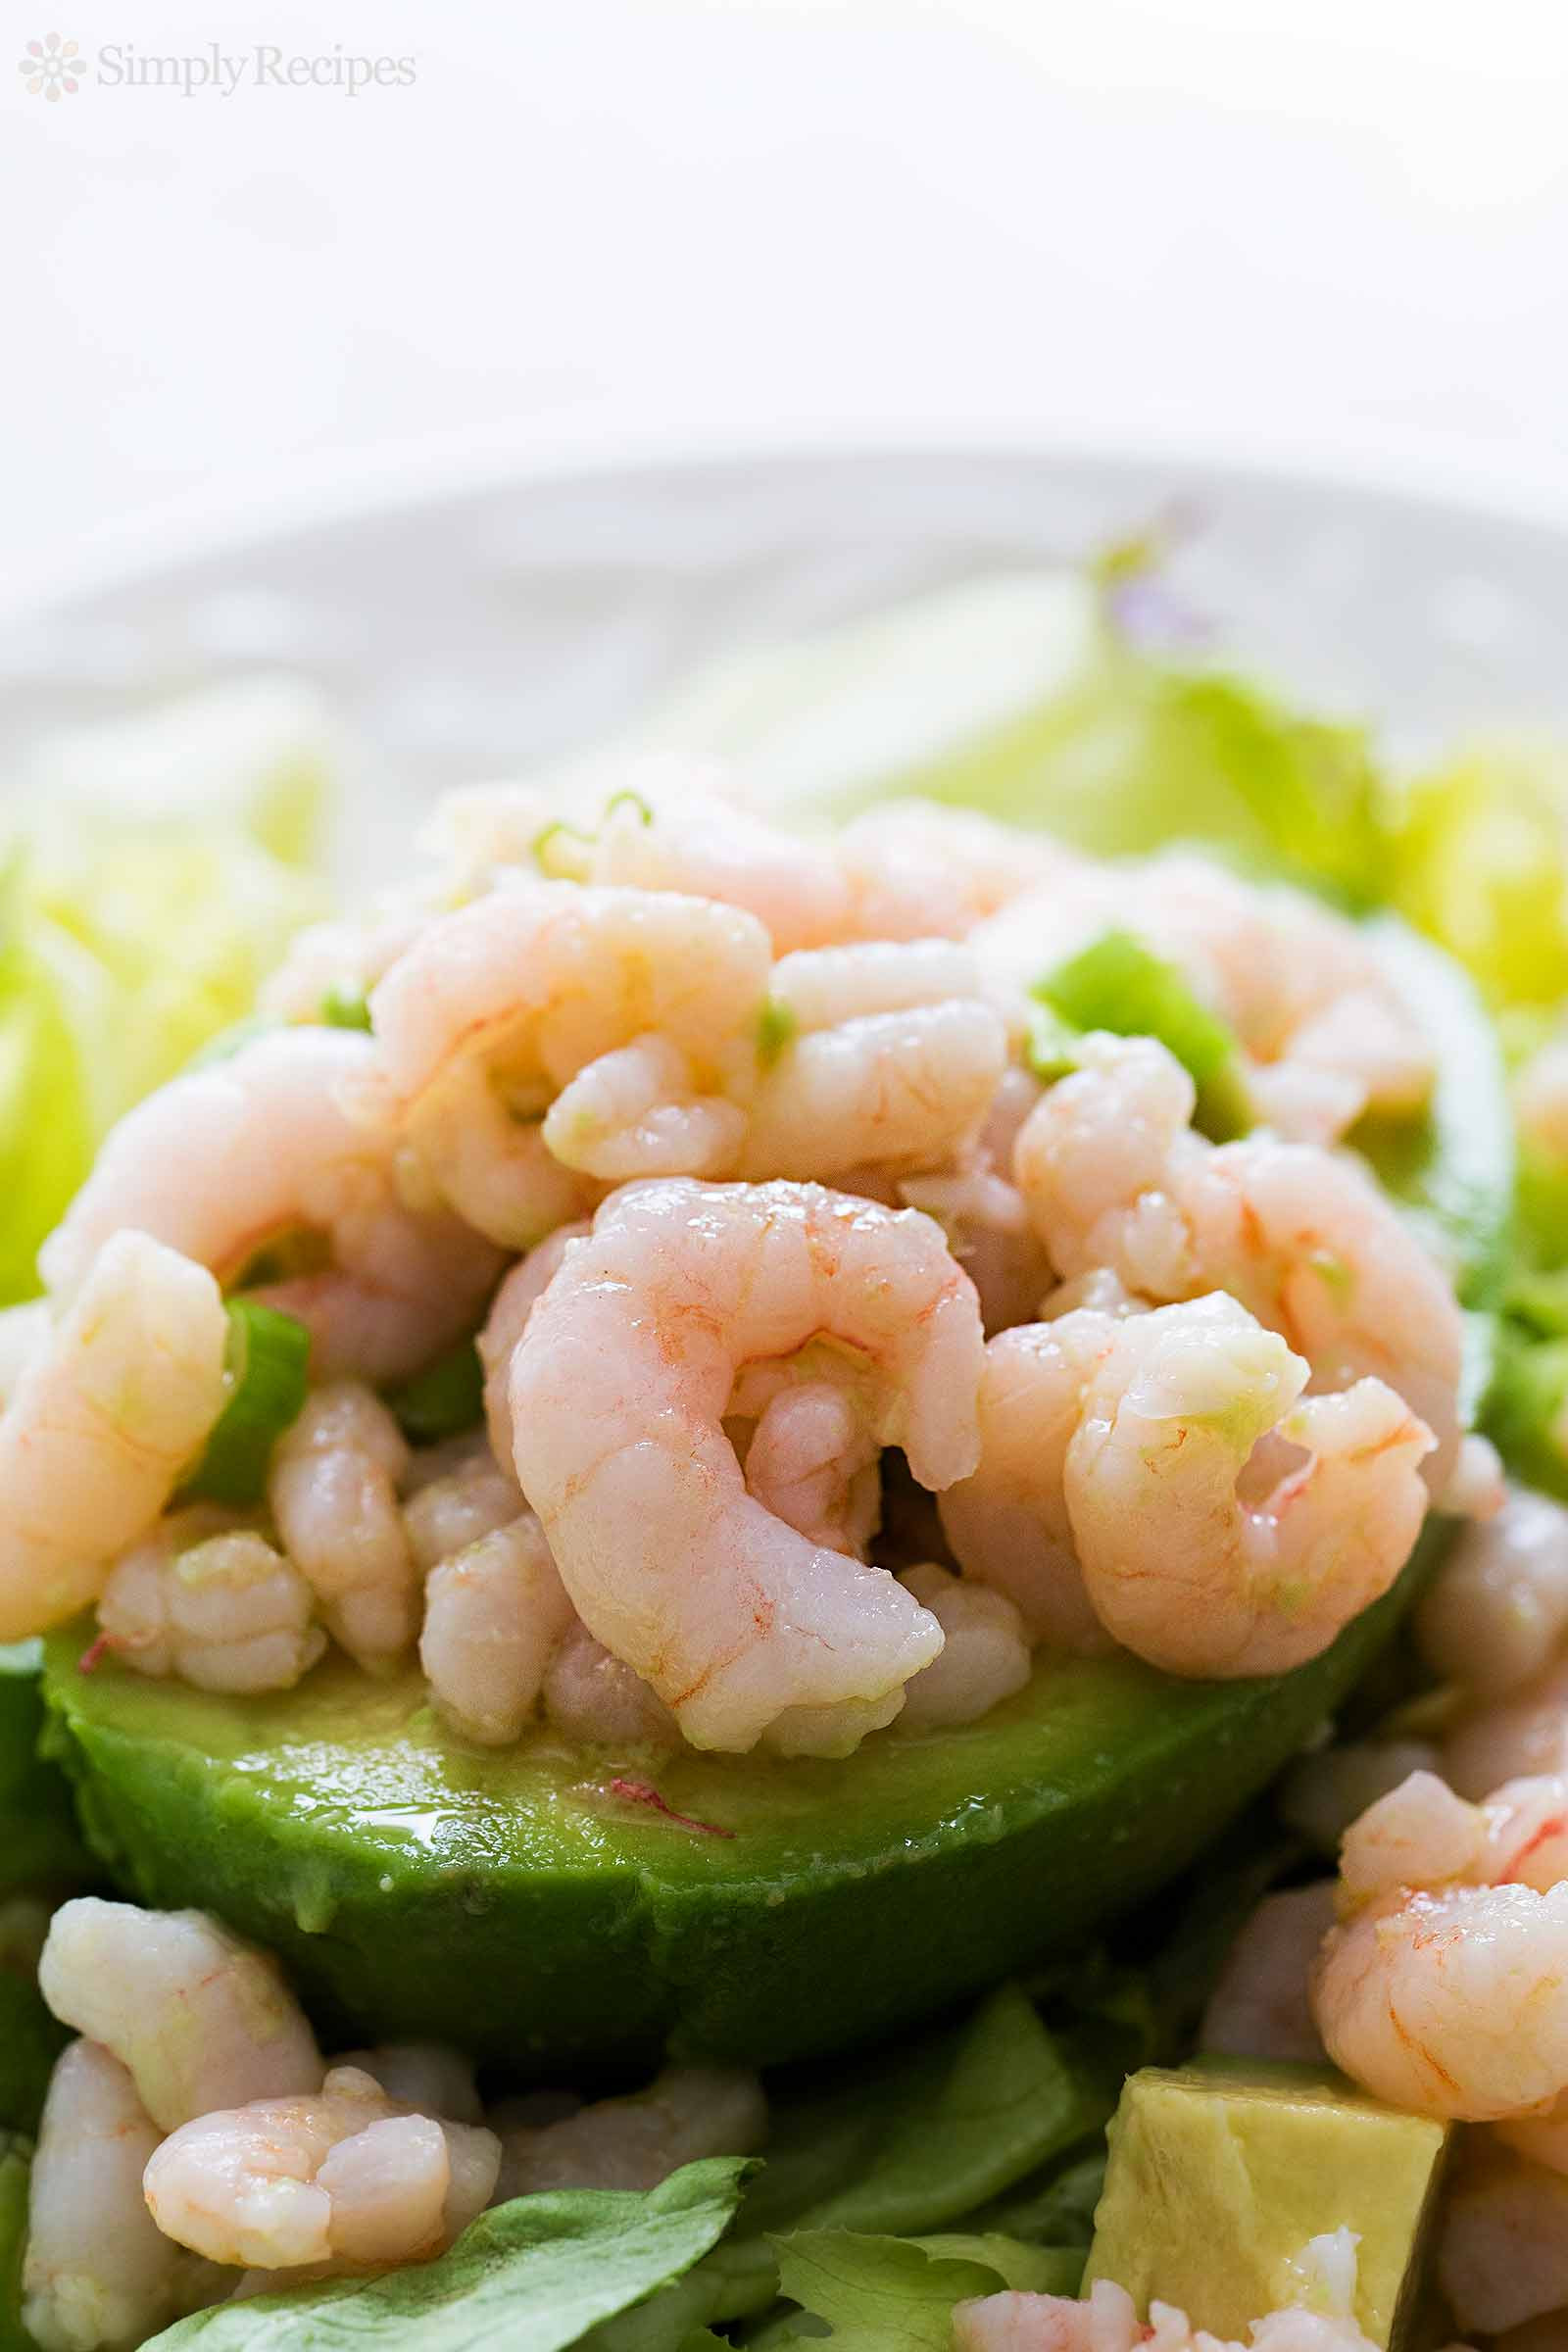 Recipes Using Salad Shrimp
 Bay Shrimp and Avocado Salad Recipe